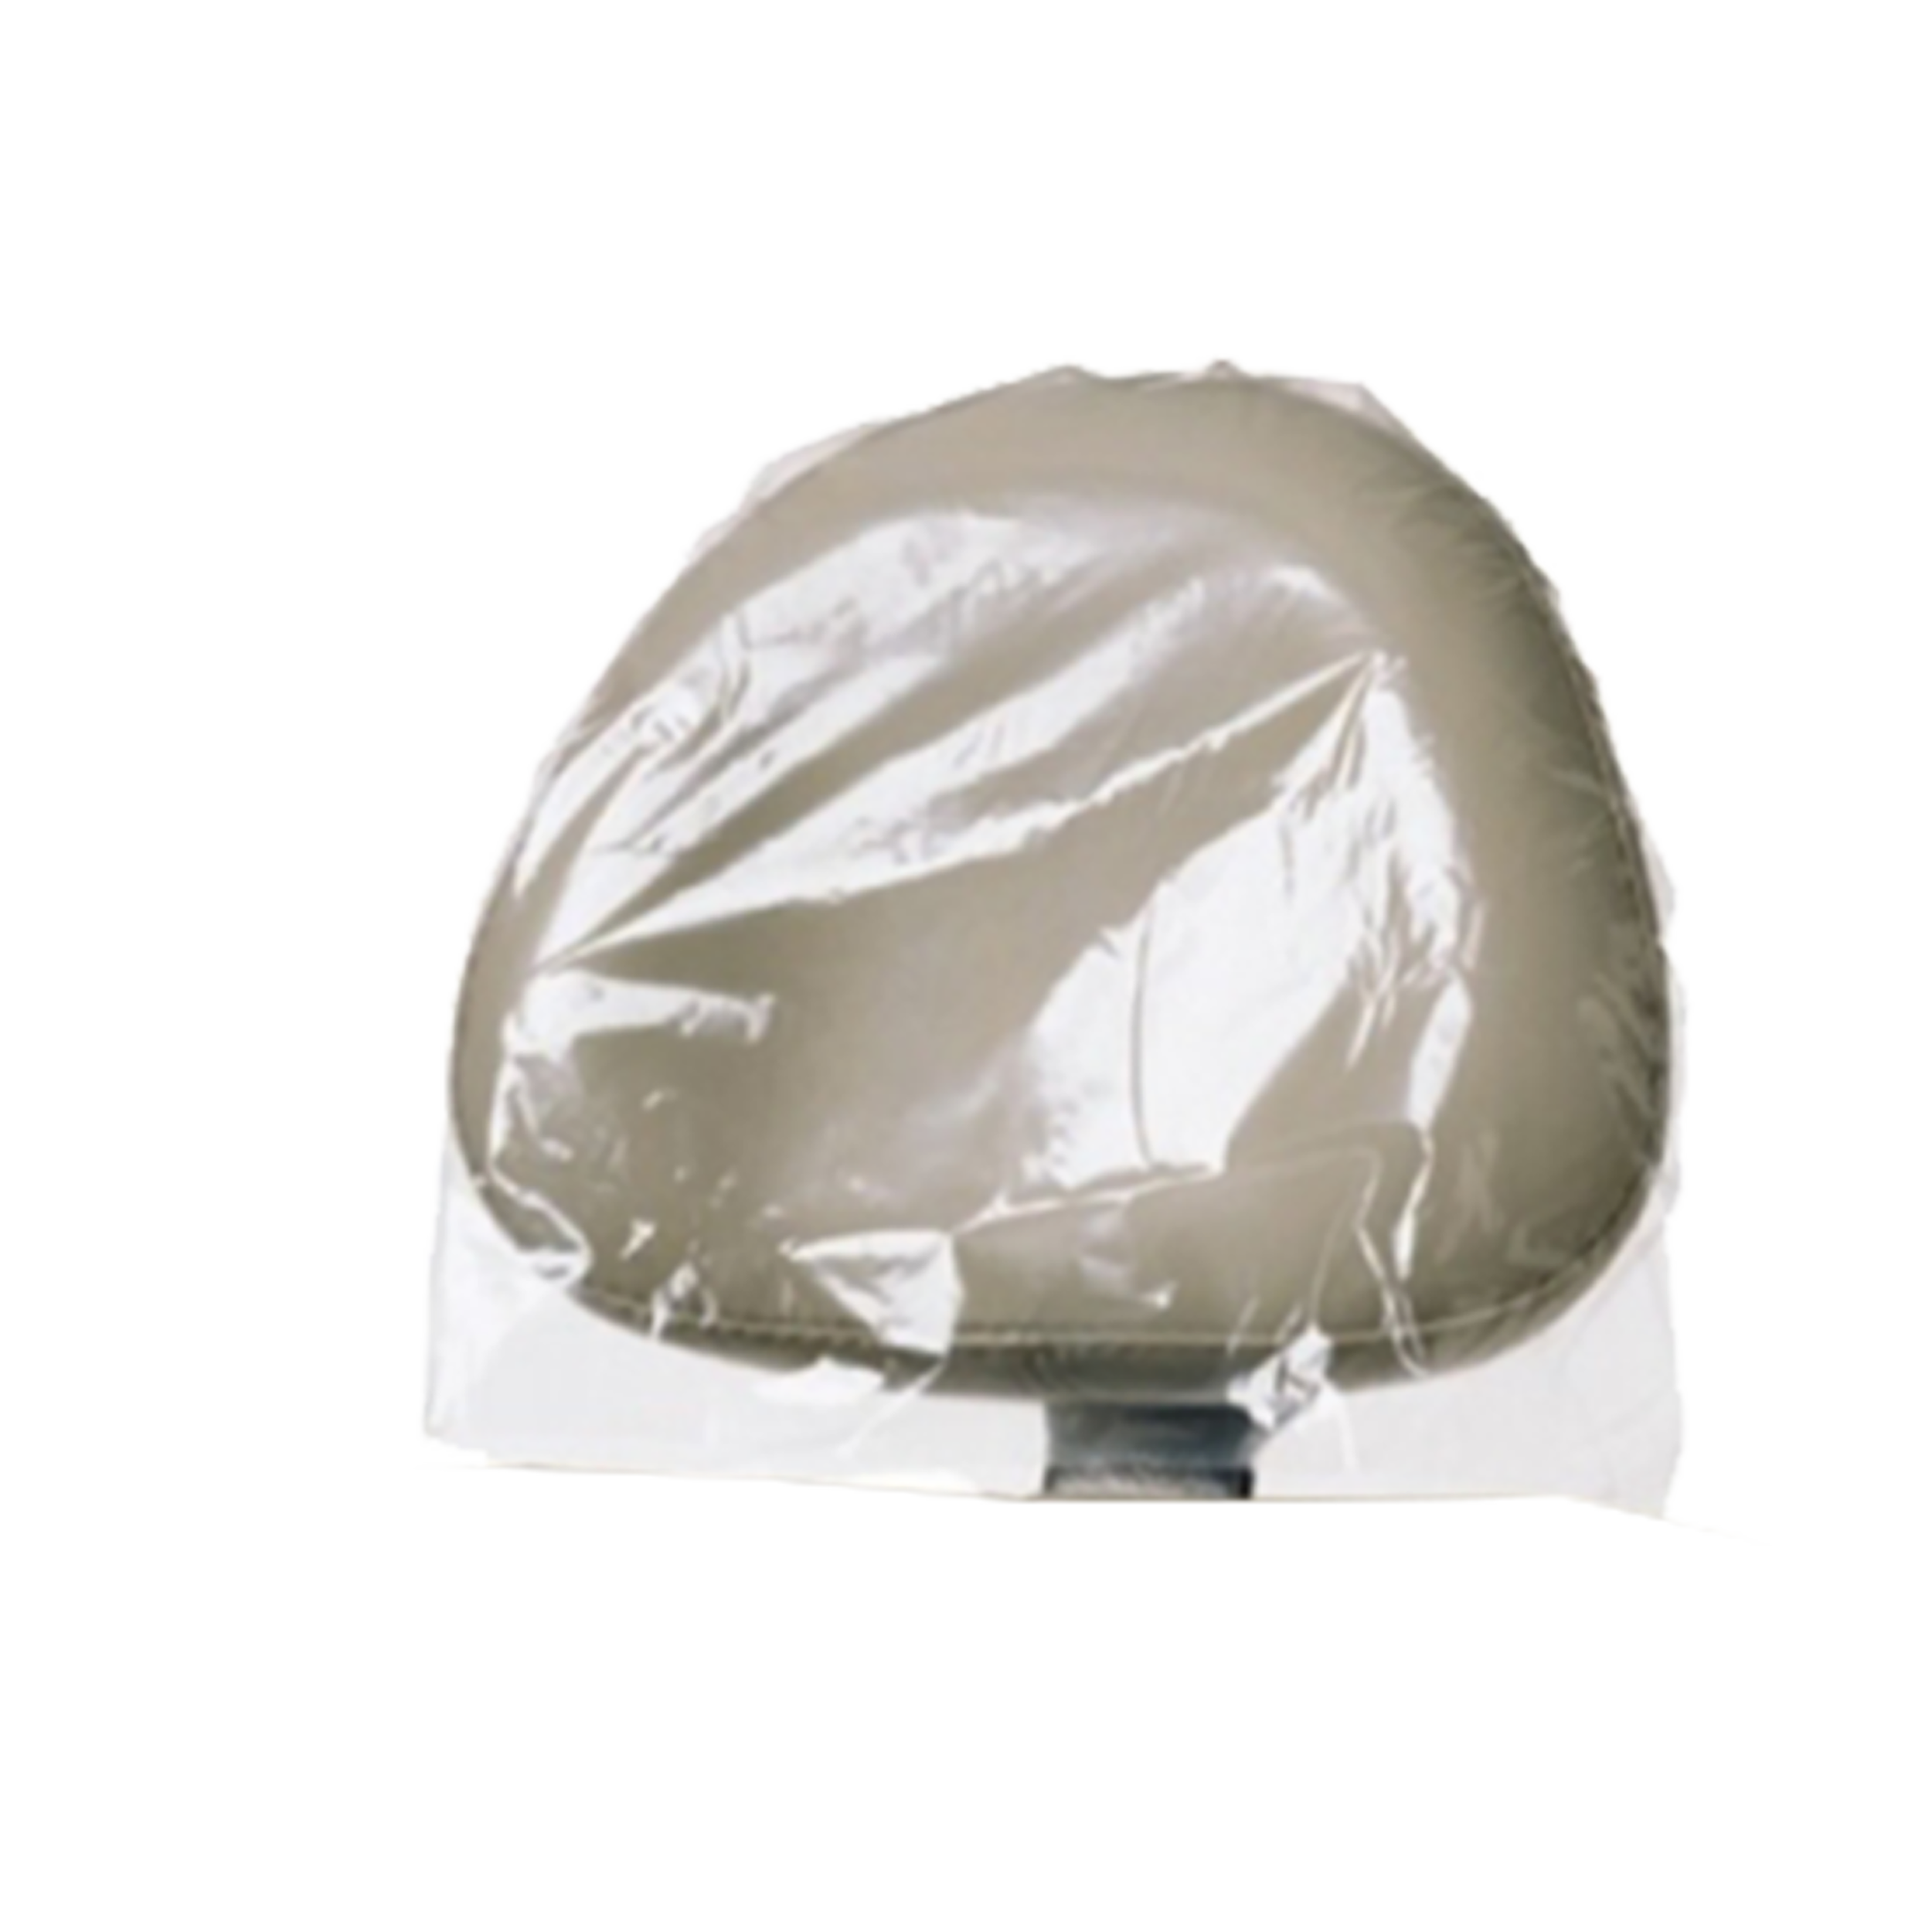 Plastic Headrest Covers – Medium